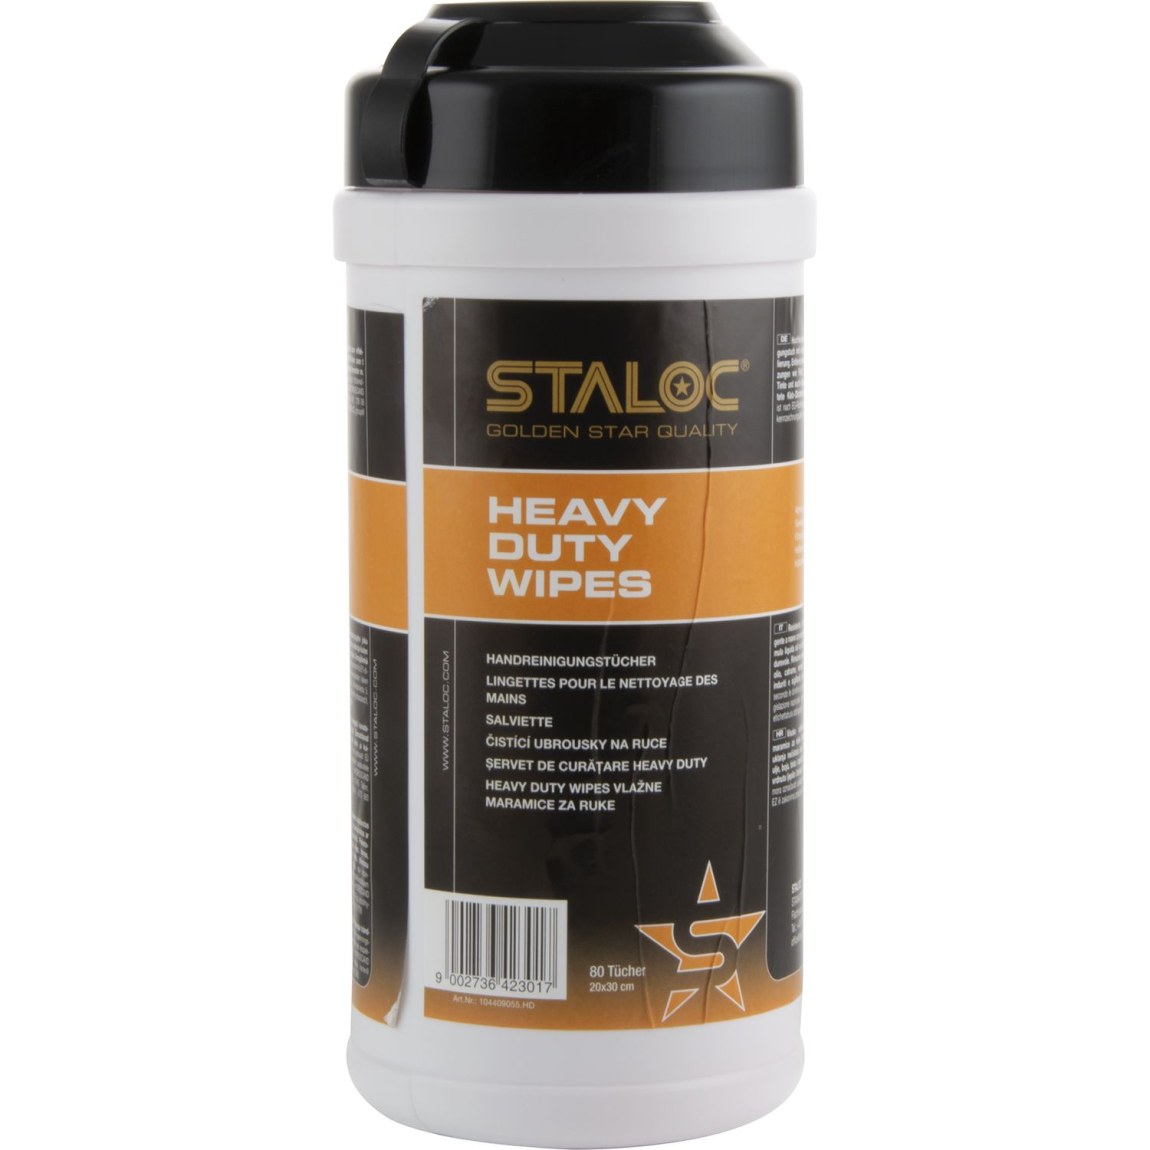 STALOC Heavy Duty Wipes čisticí ubrousky 80ks - Železářství Chemicko-technické výrobky Čističe, chladicí, kluzné mazací prostředky